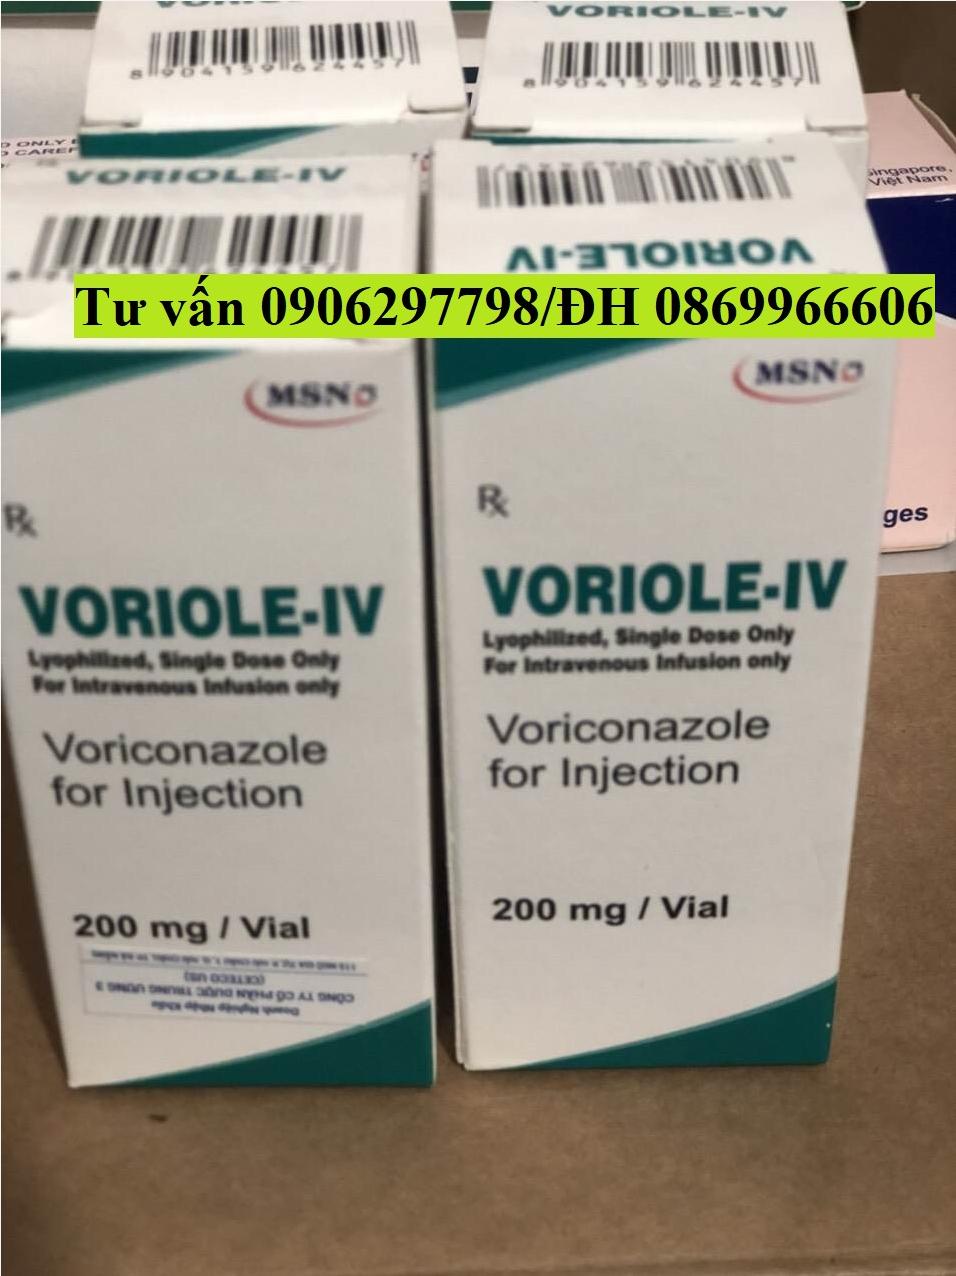 Thuốc Voriole-IV Voriconazole giá bao nhiêu mua ở đâu?